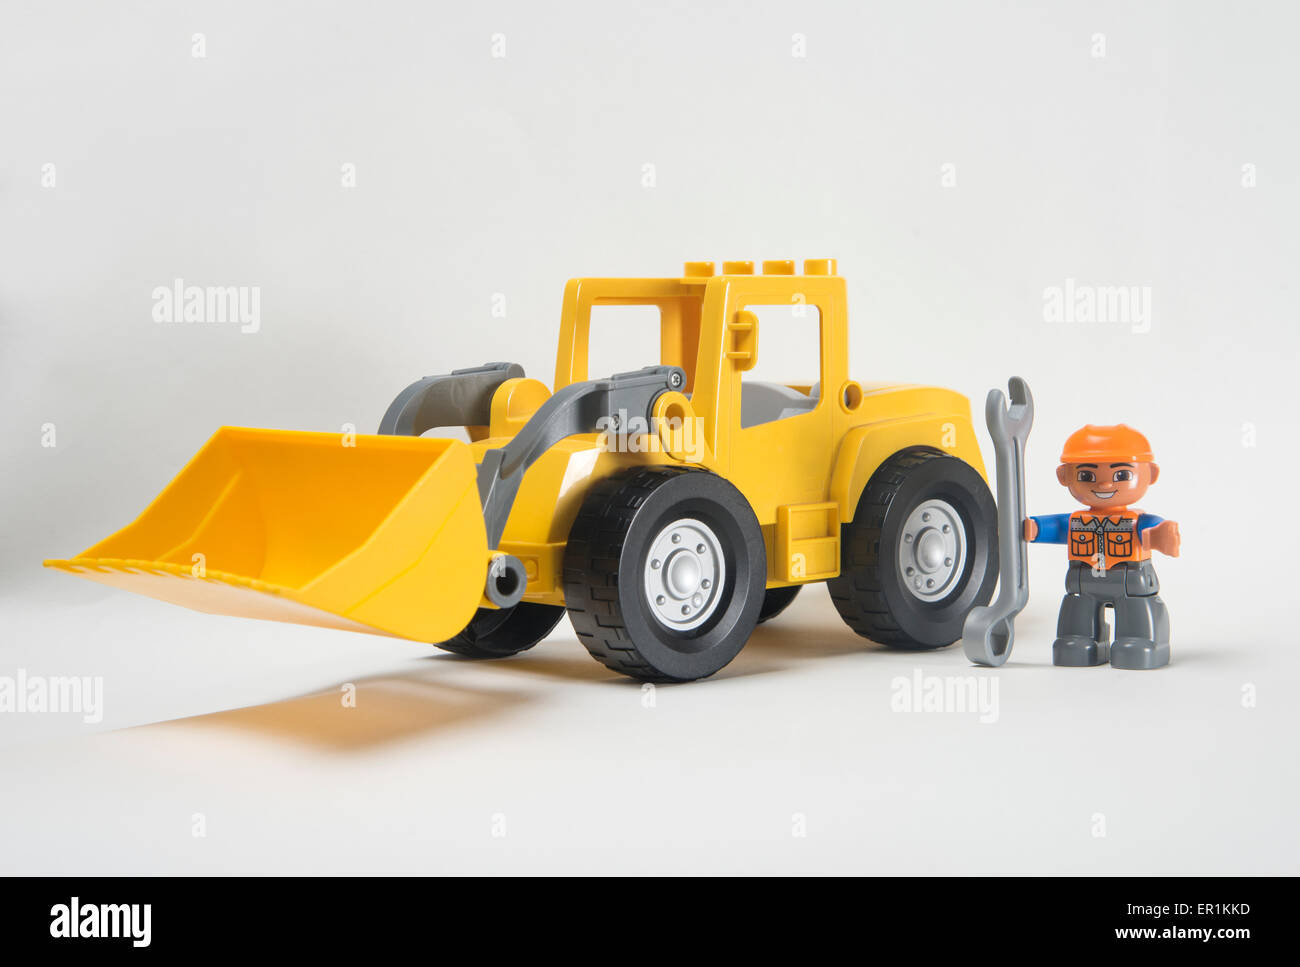 Mann bei der Arbeit. Lego Duplo Frontlader Bagger mit Fahrer mit  Schraubenschlüssel Stockfotografie - Alamy